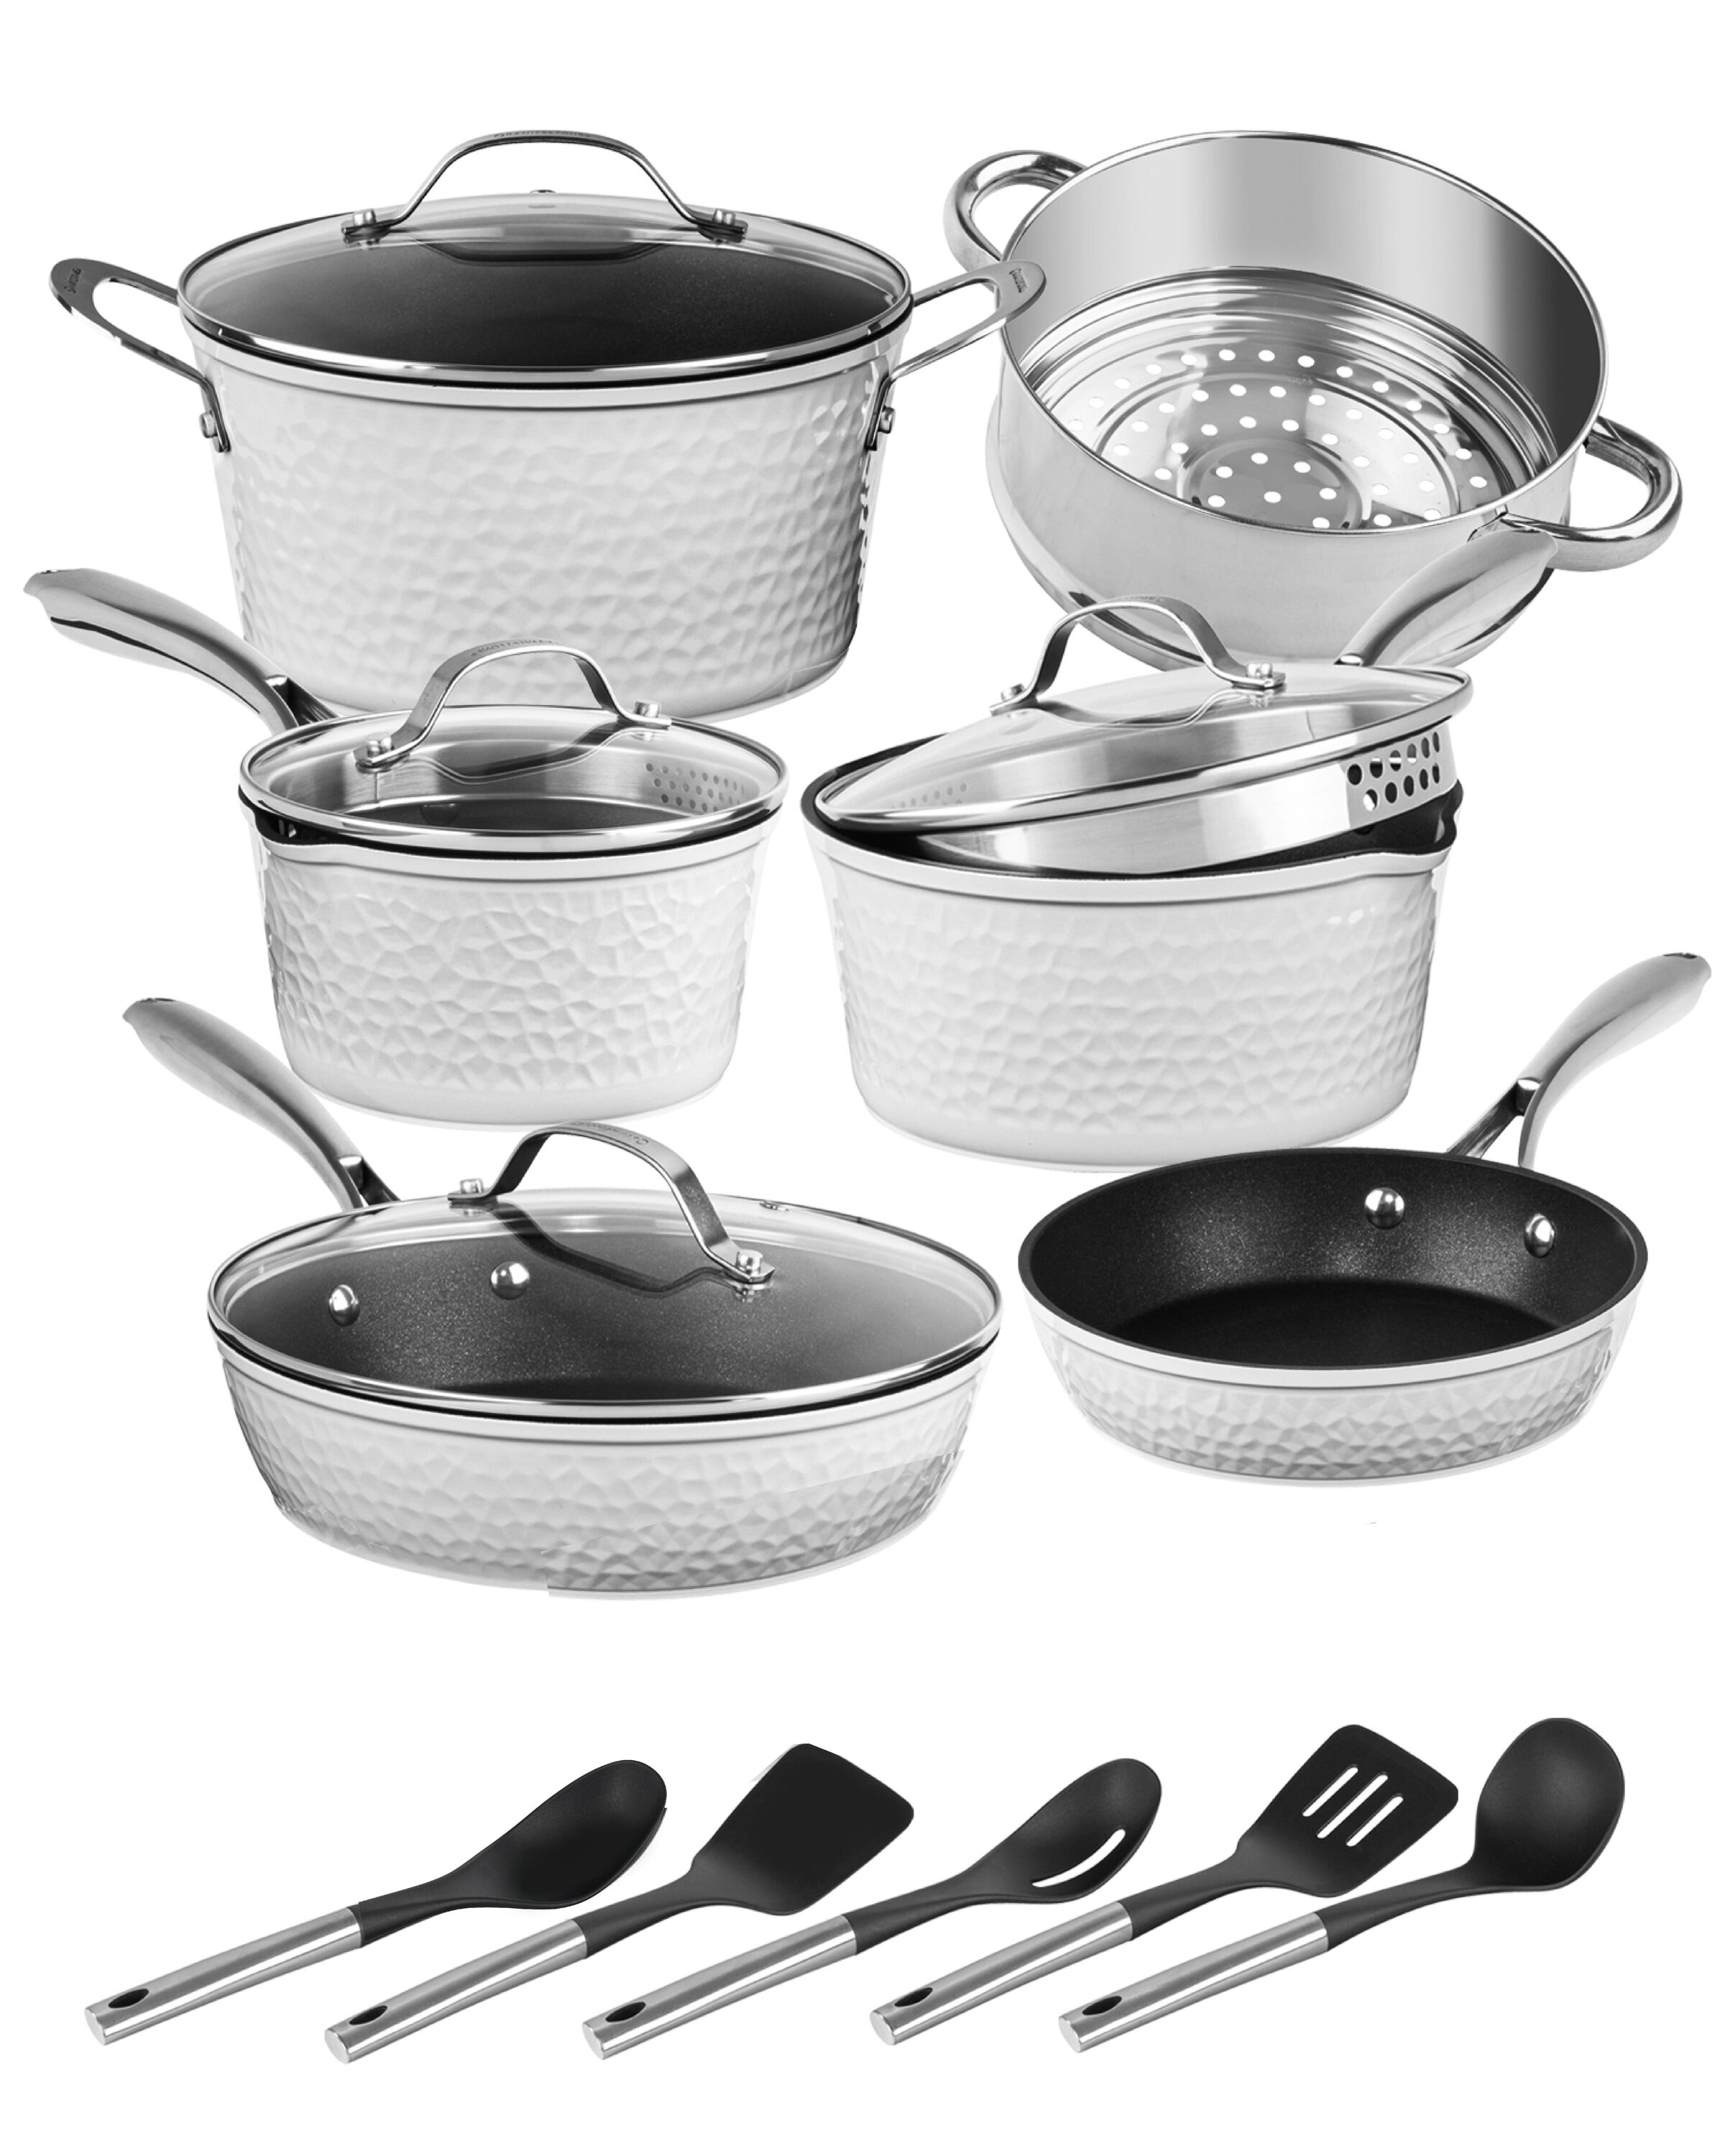 Nutrichef Nonstick Cookware Excilon Home Kitchen Ware Pots & Pan Set 11 Pcs, Purple Diamond